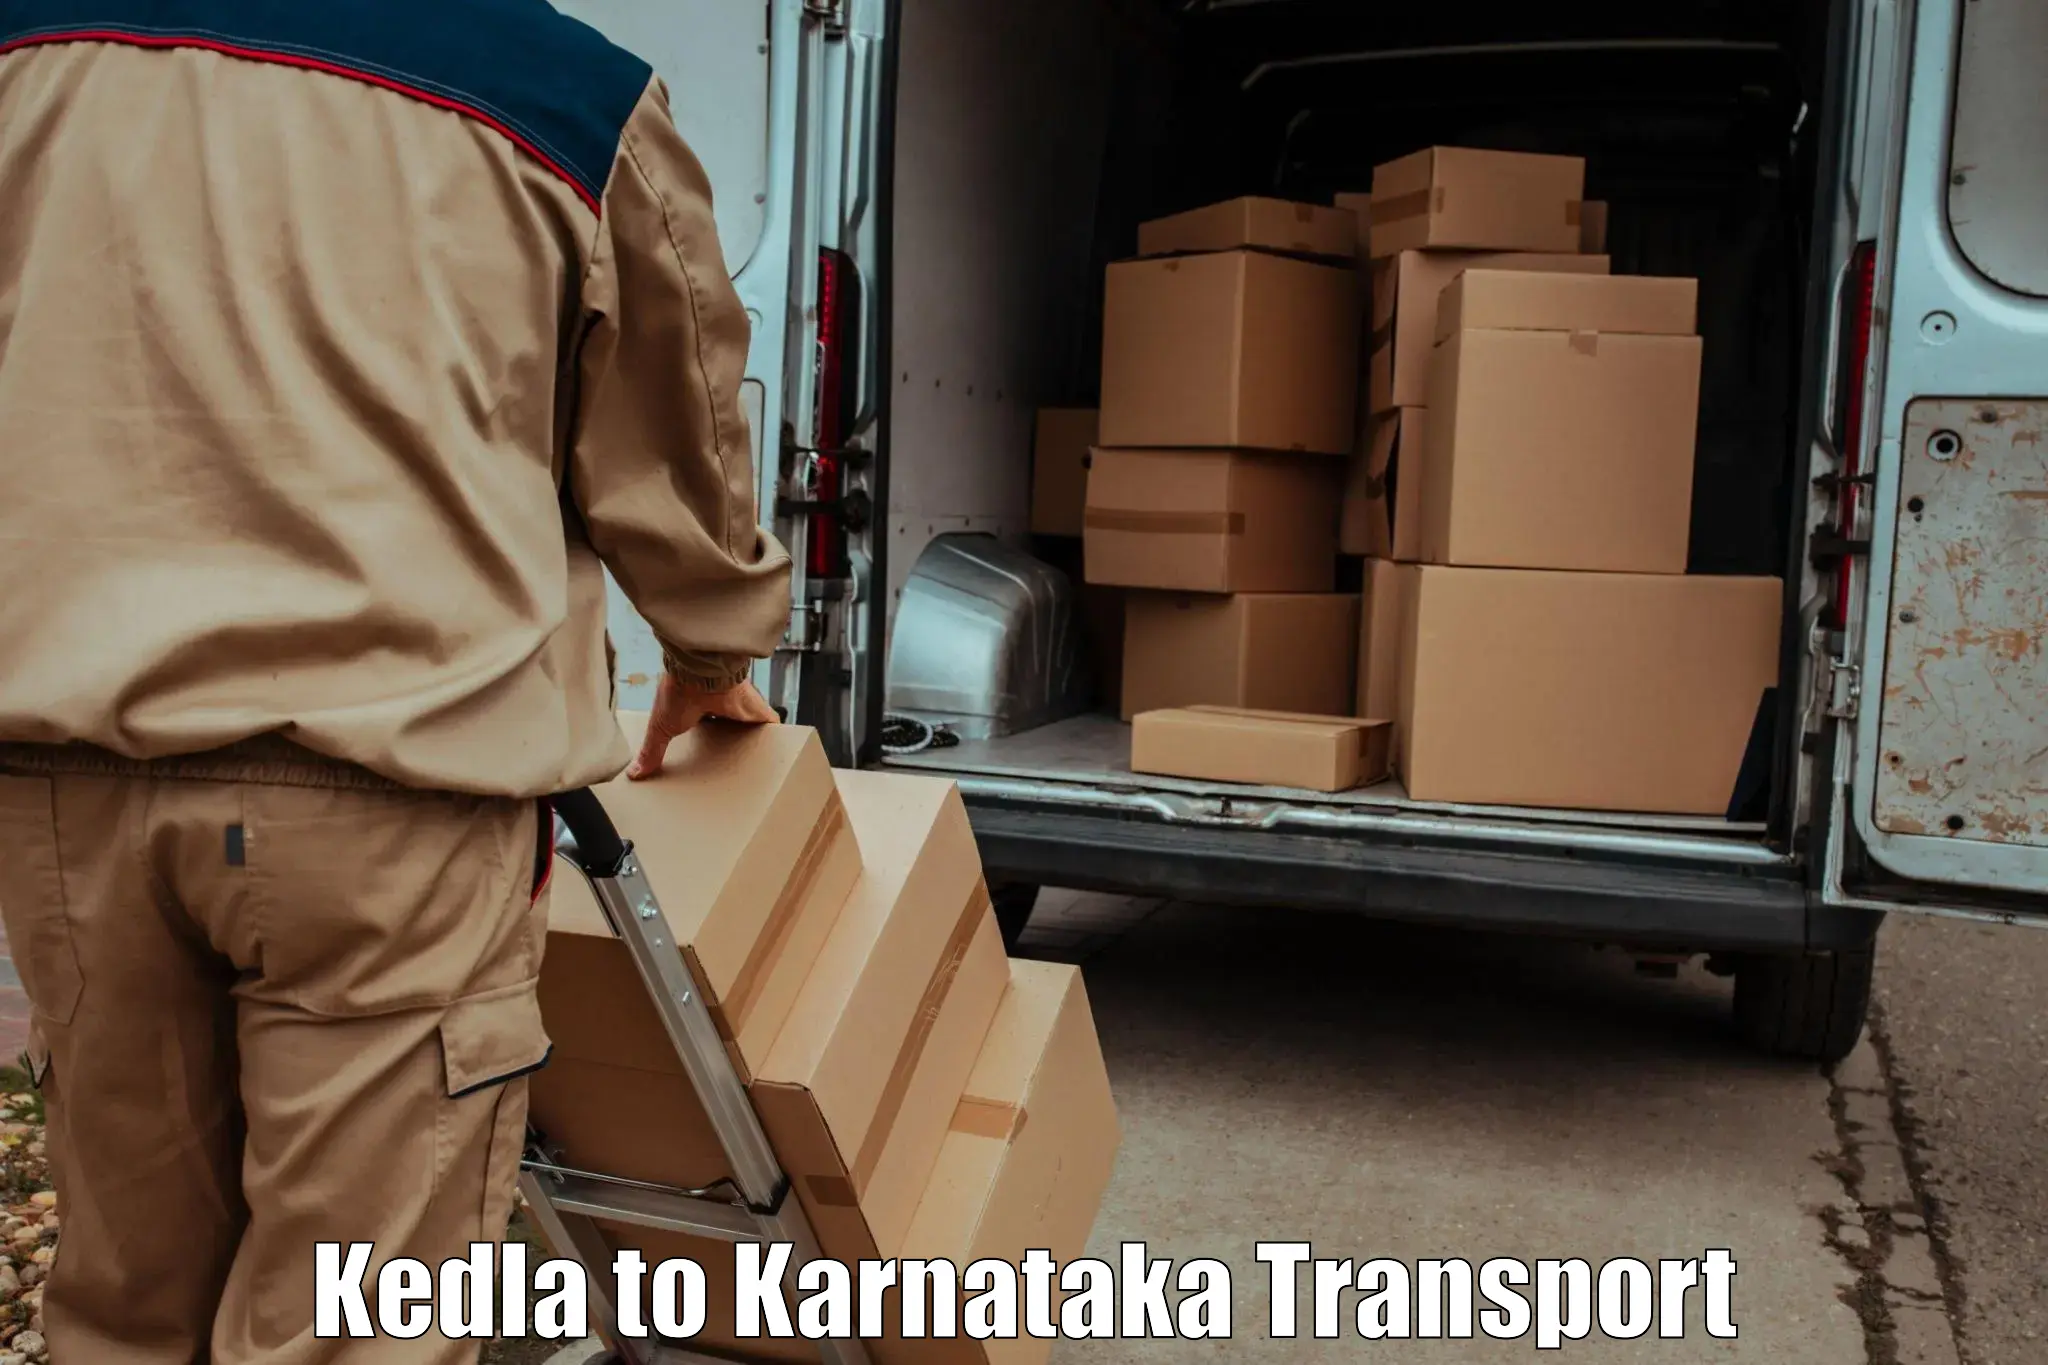 Transportation services Kedla to Jayanagar